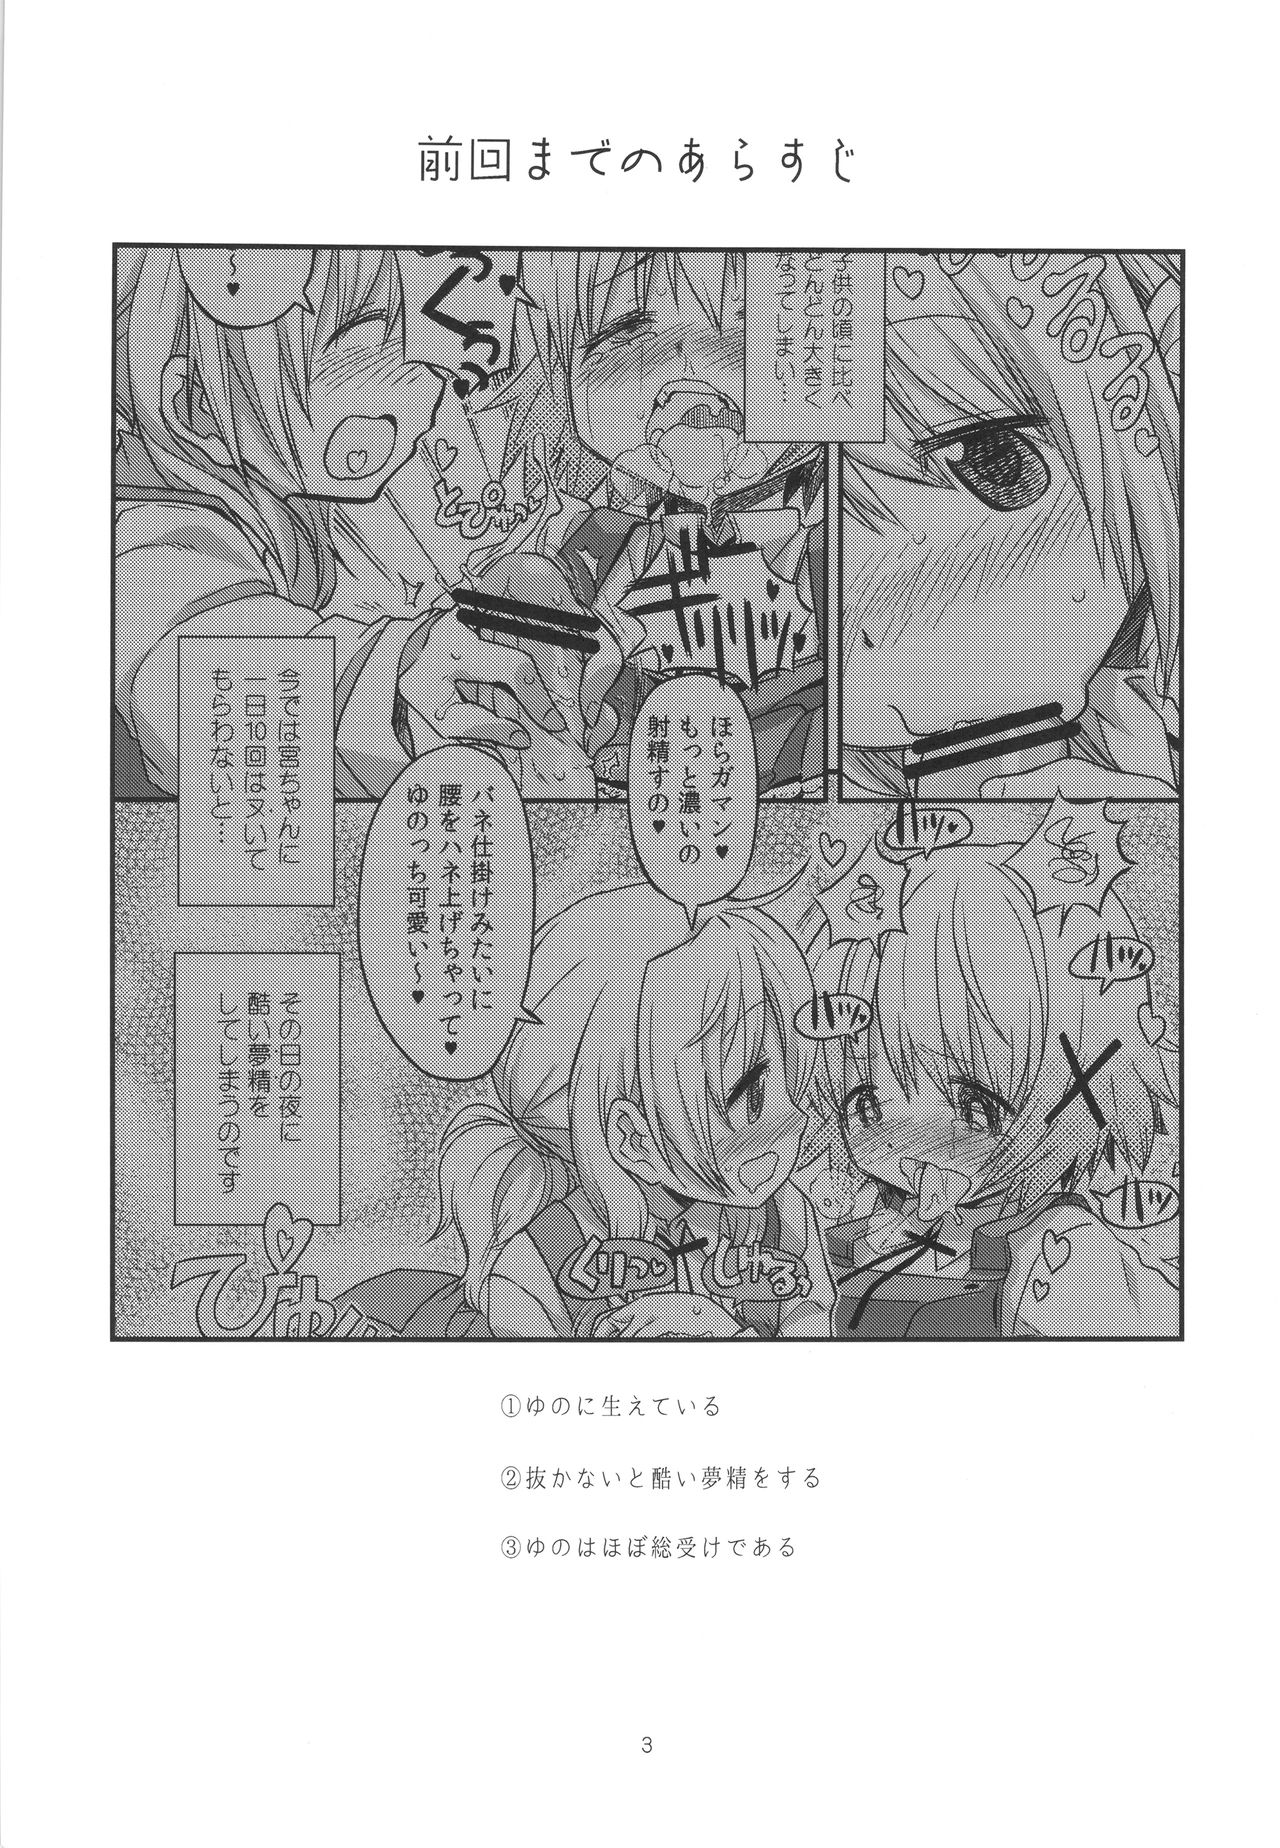 (Tora Matsuri 2015) [GADGET (A-10)] Futanari Sketch 2 (Hidamari Sketch) (とら祭り2015) [ガジェット工房 (A-10)] ふたなりスケッチ2 (ひだまりスケッチ)